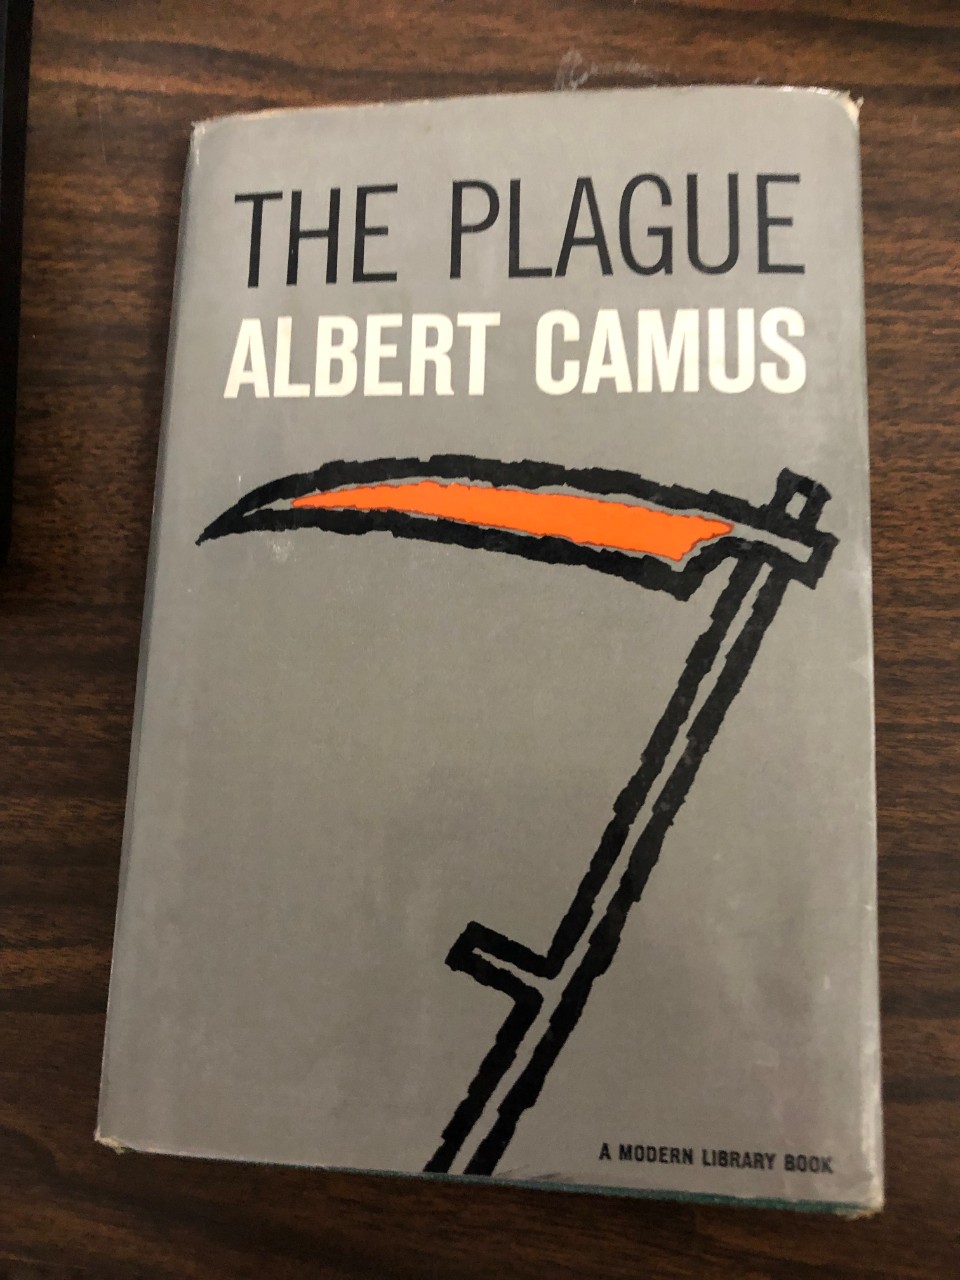 Camus' The Plague book cover